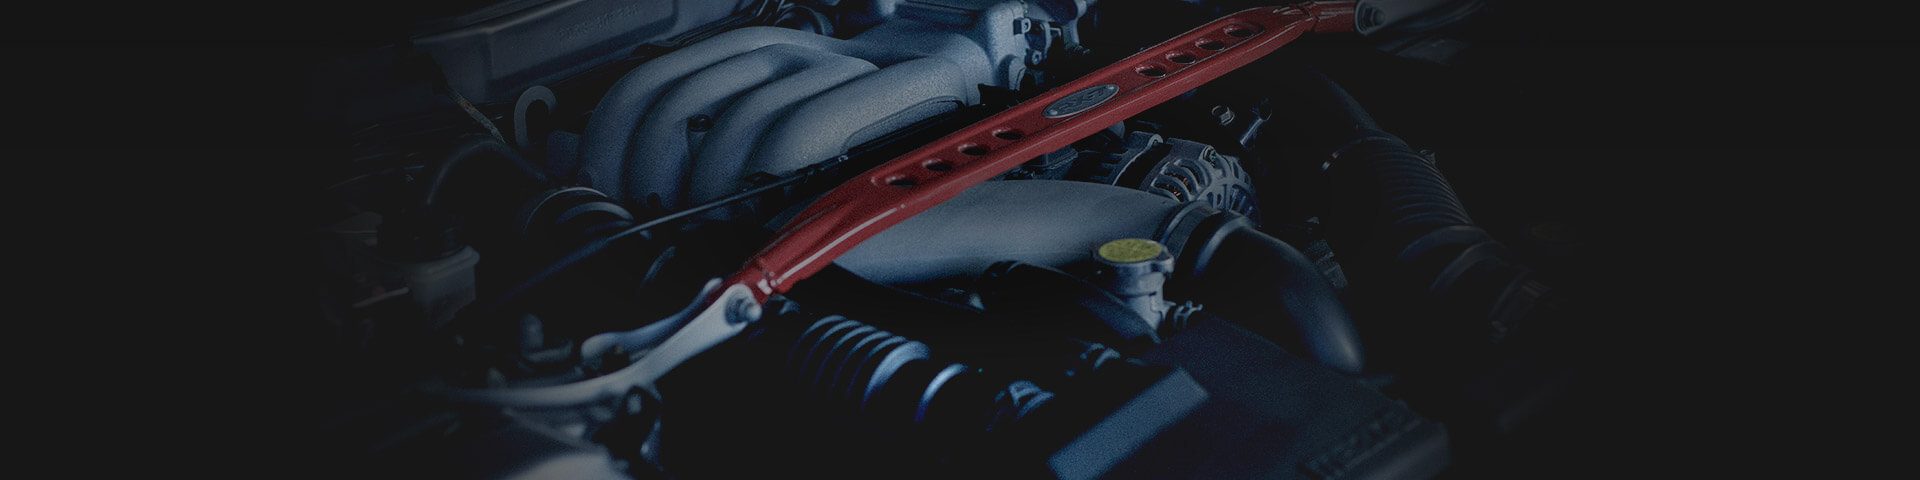 Mazda RX7: motor.